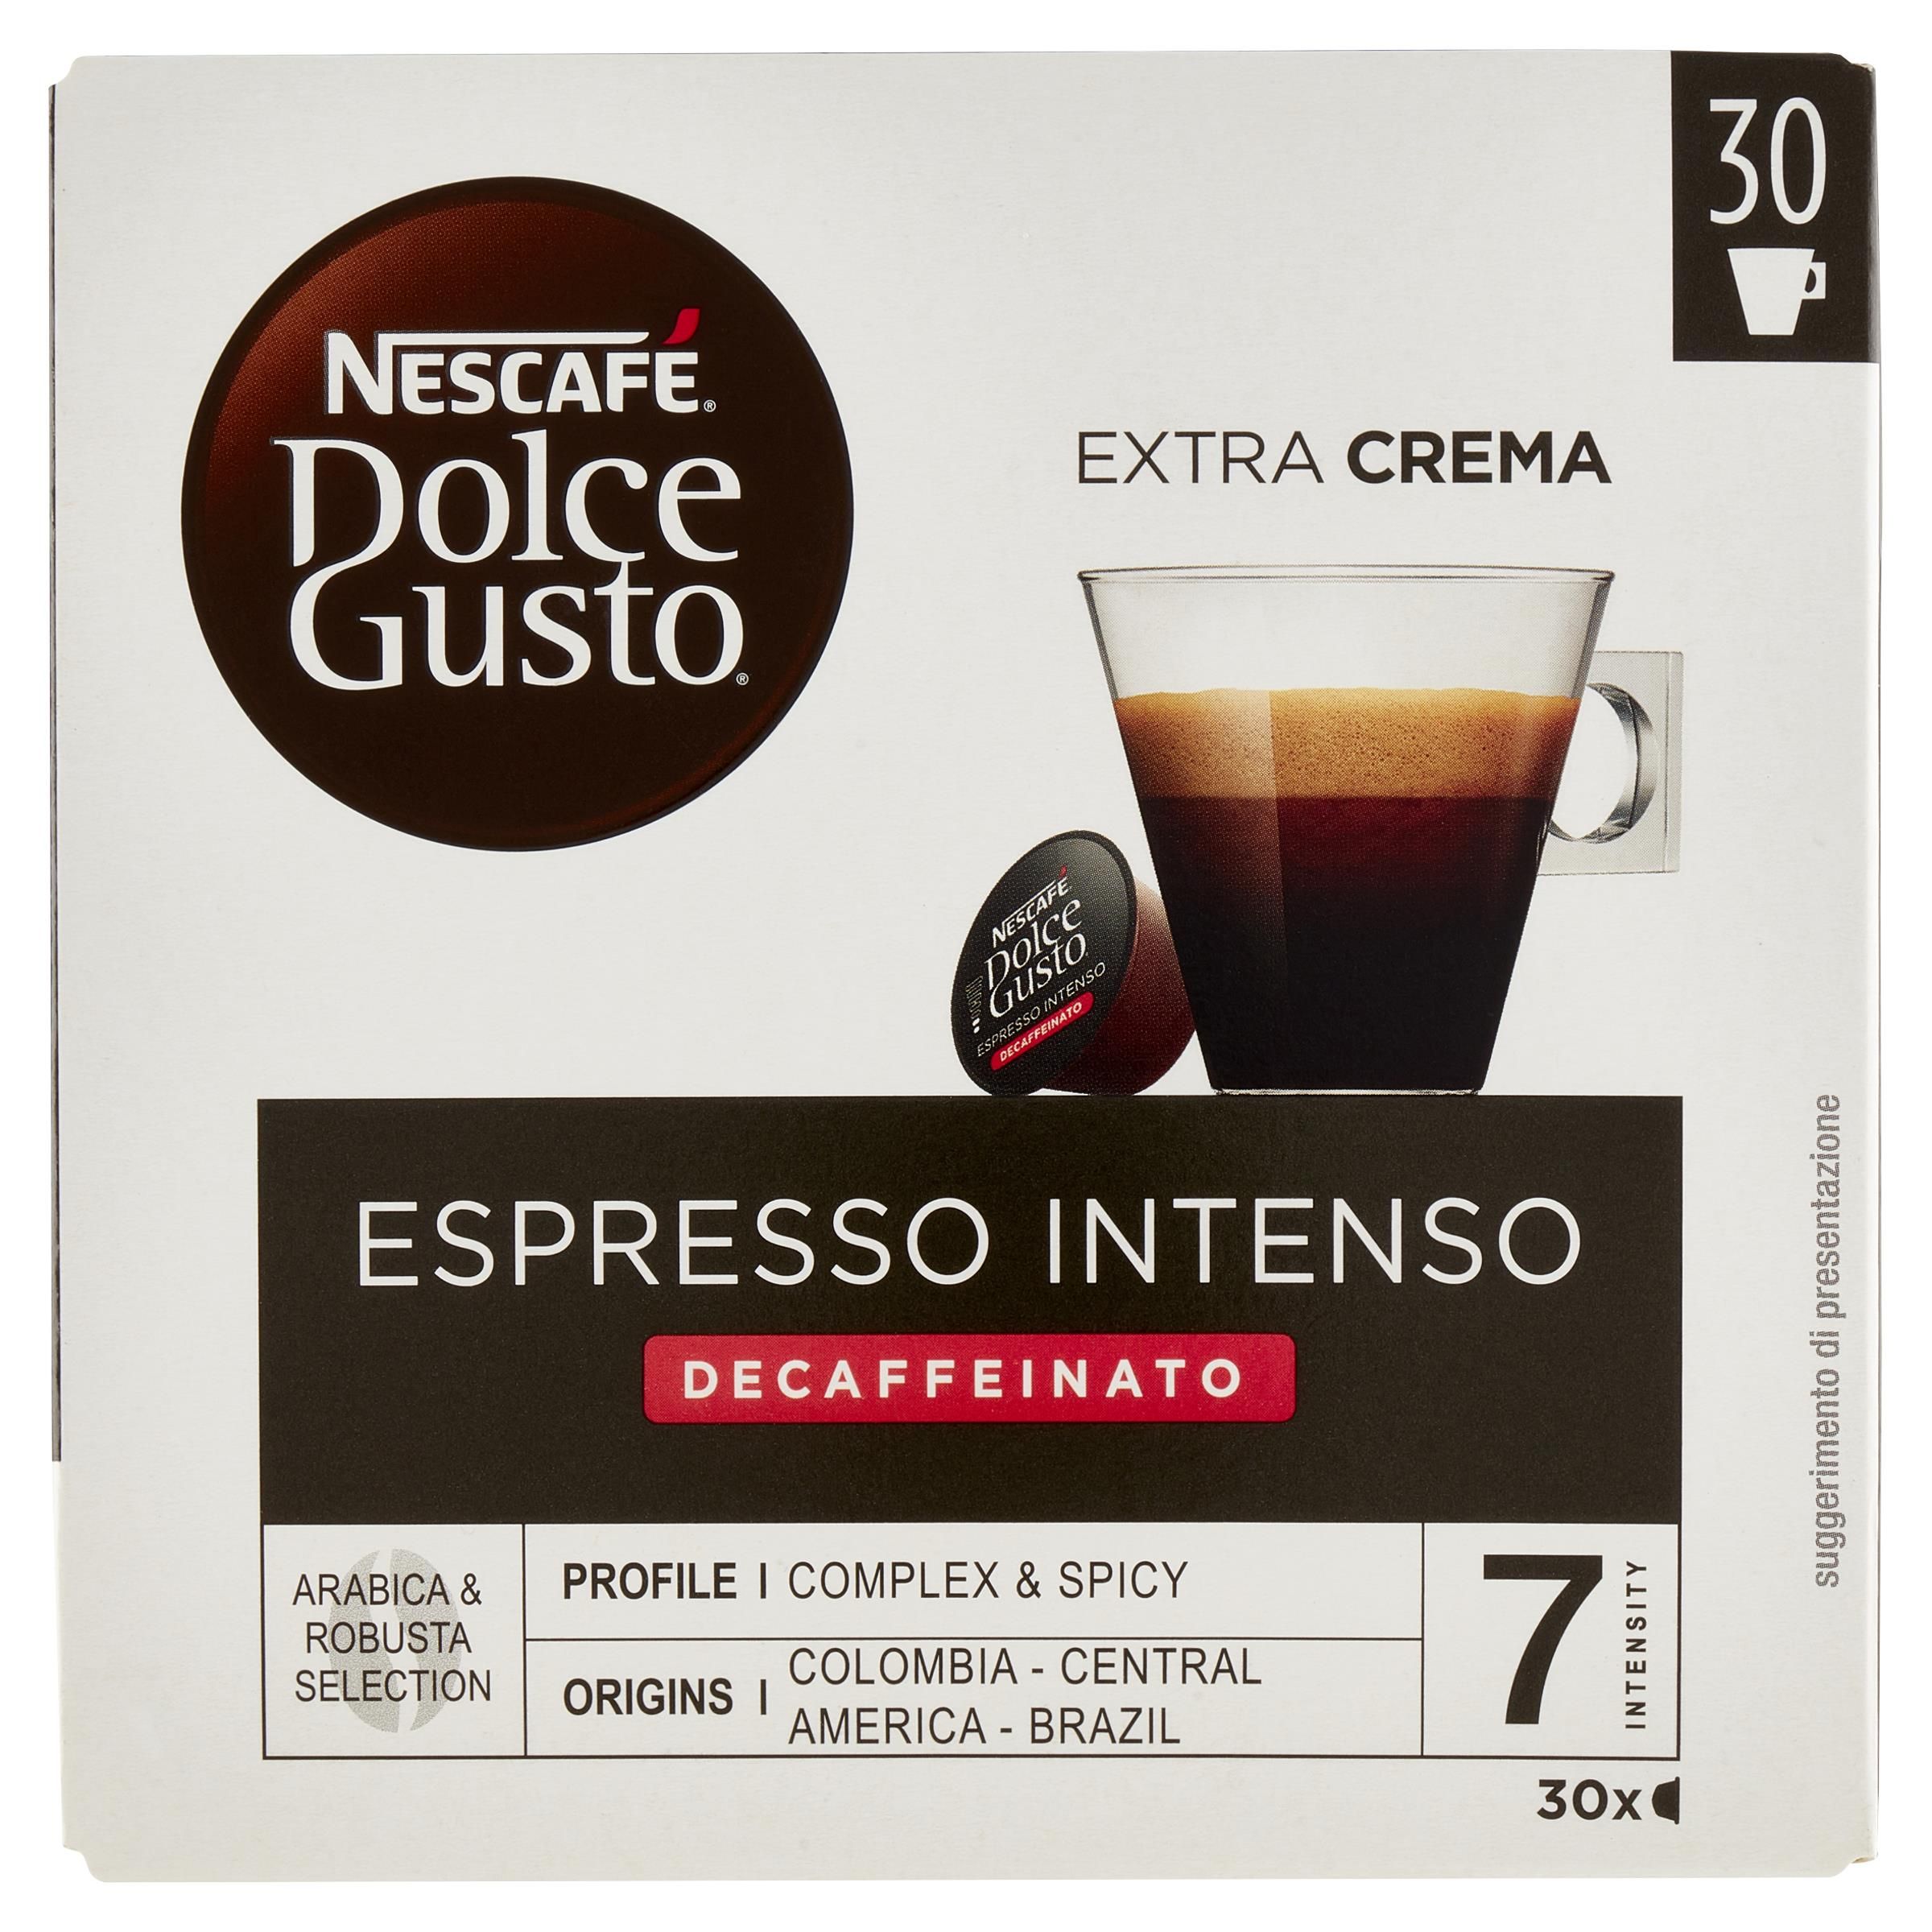 Nescafe' Capsule Dolce Gusto Espresso Intenso Decaffeinato